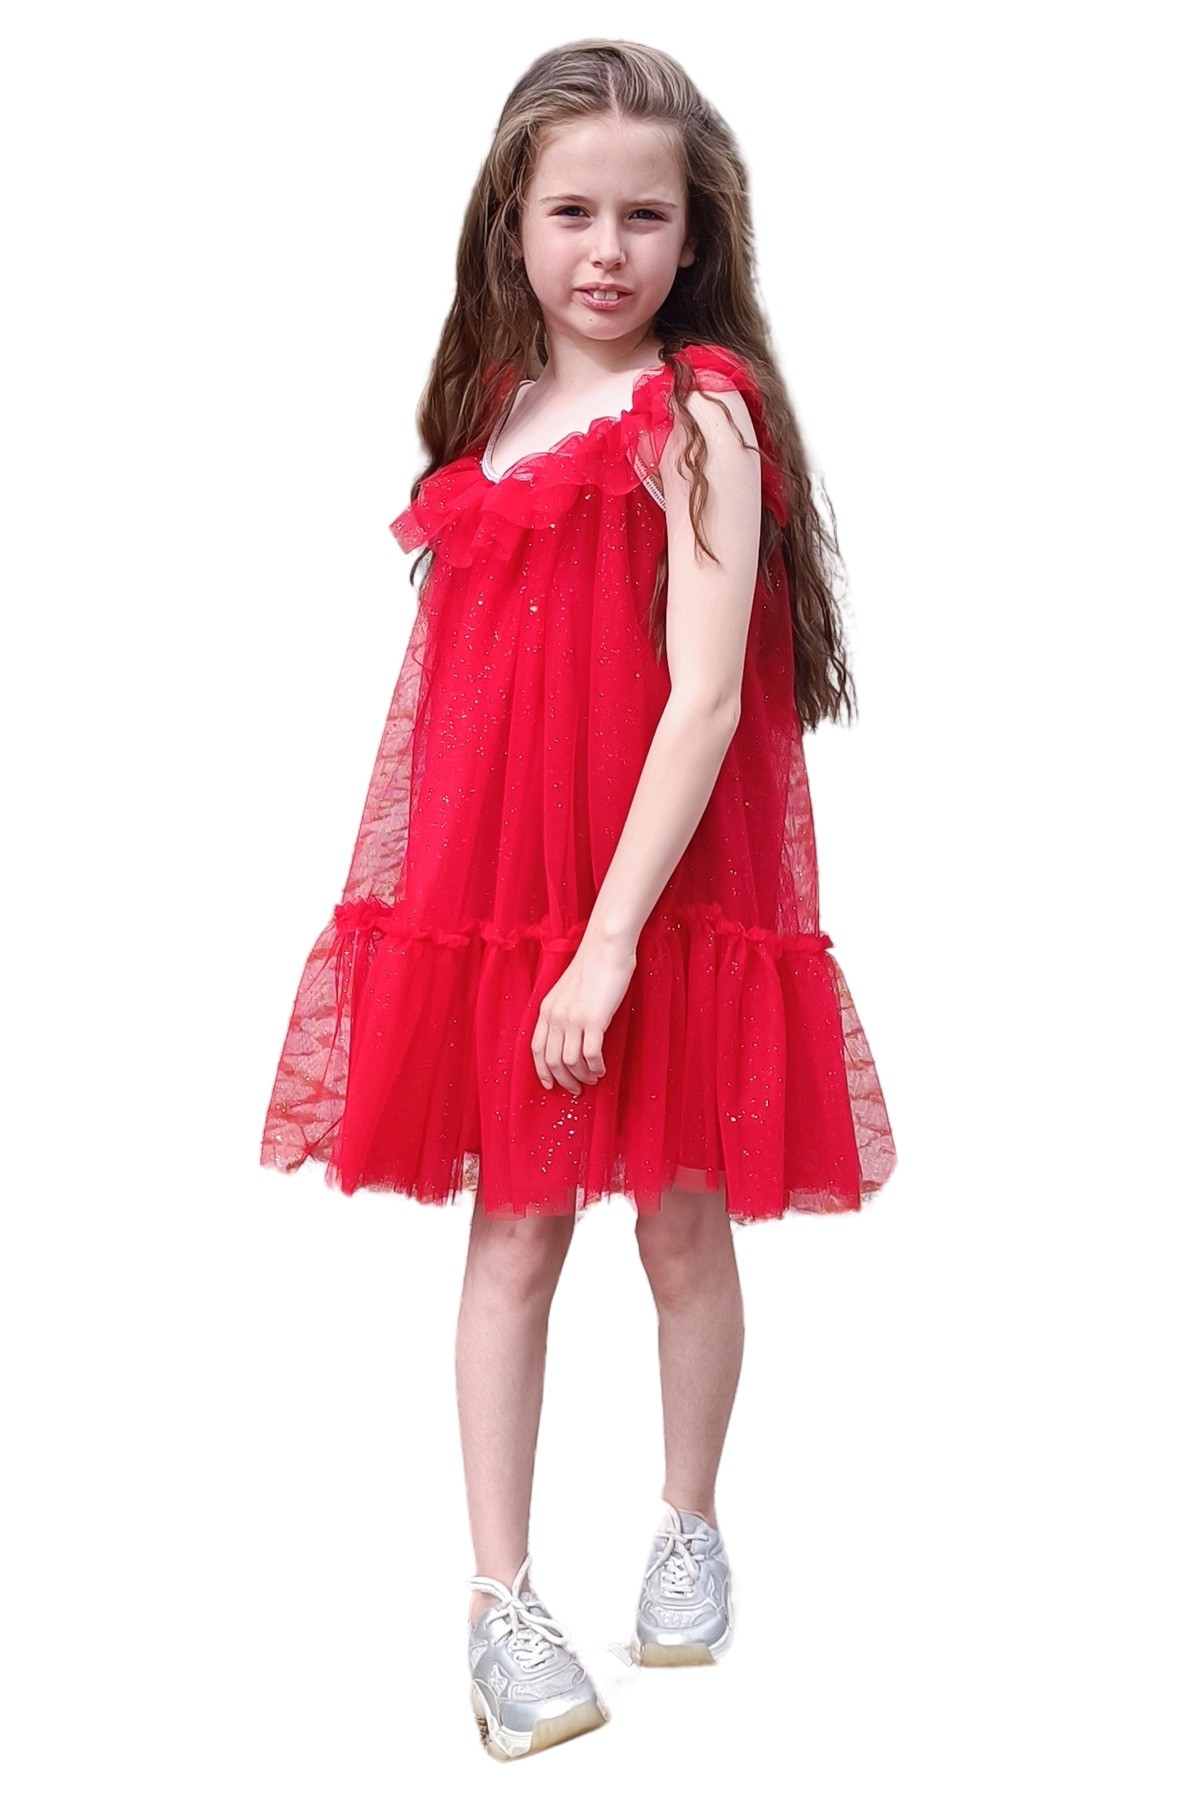 April Parlak Biyeli Yakası ve Eteği Fırfırlı Kız Çocuk Parti Elbisesi